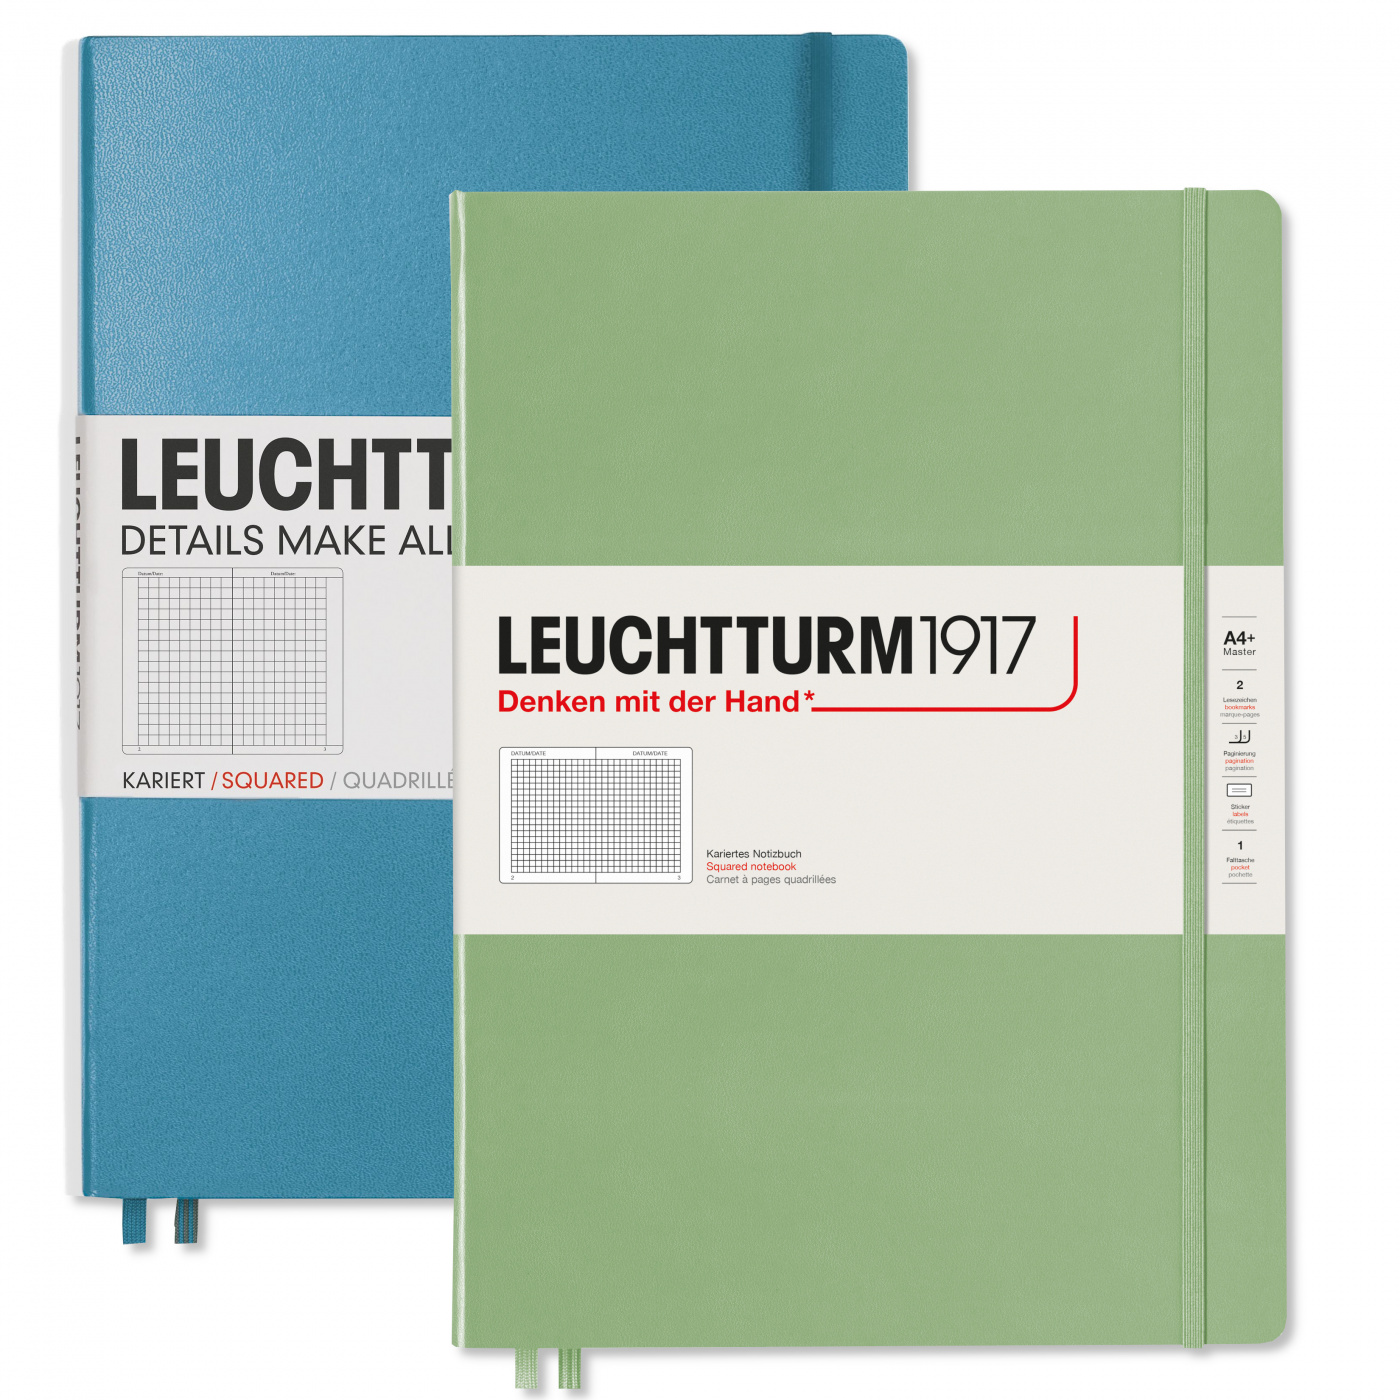 Записная книжка в клетку Leuchtturm Master Slim А4+ 123 стр., твердая обложка пастельный зеленый записная книжка в линейку leuchtturm master a4 235 стр твердая обложка темно синяя